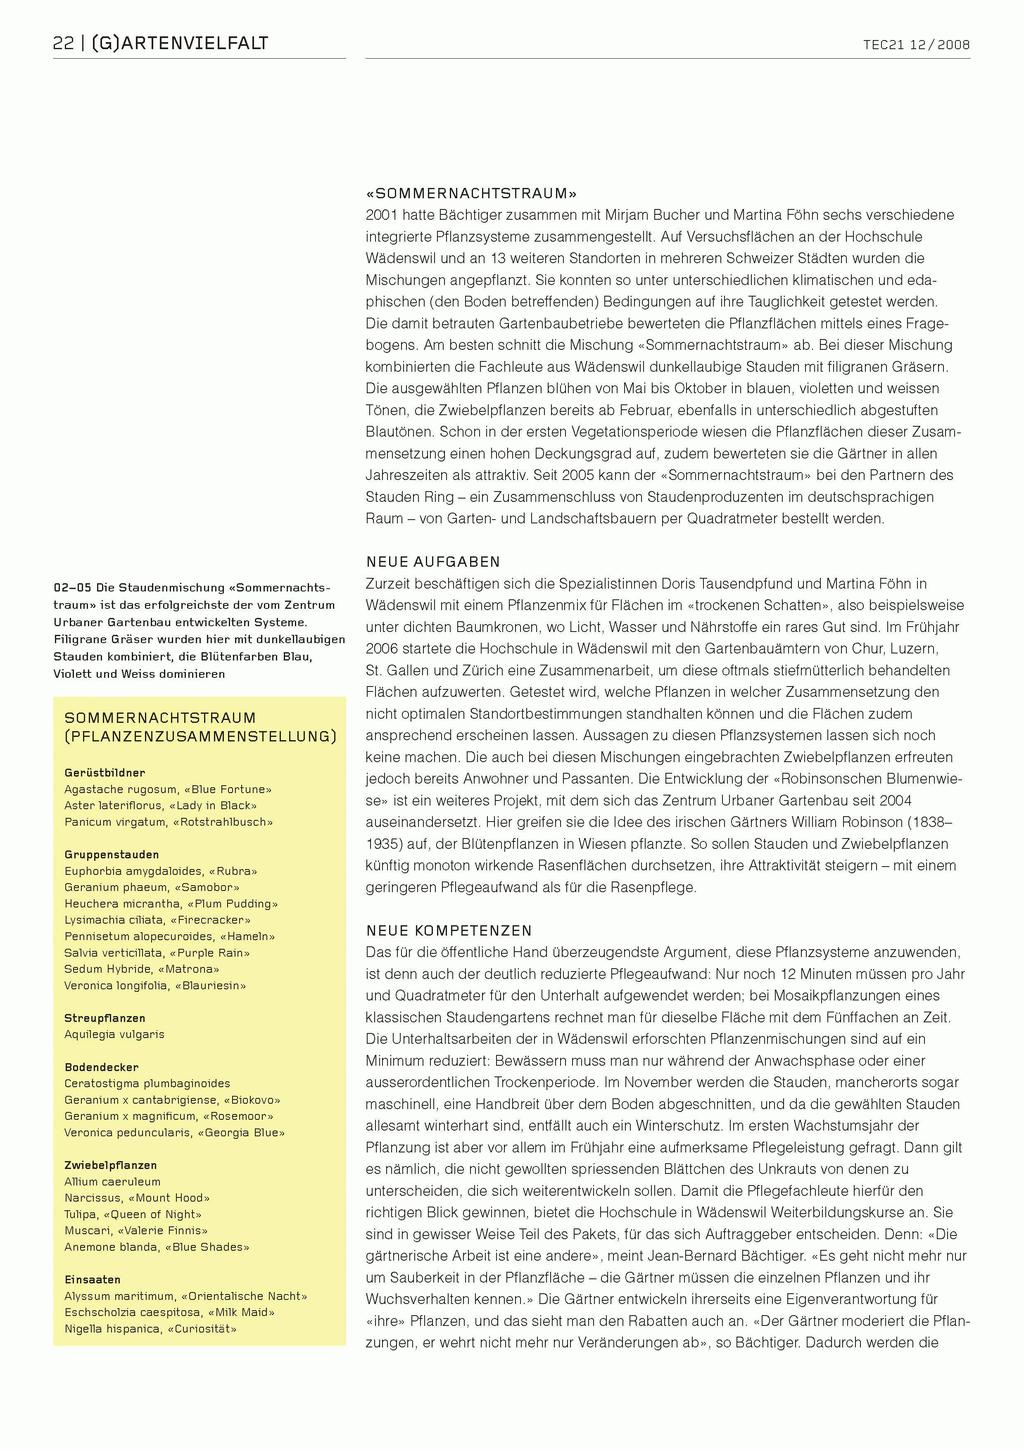 22 G)ARTENVIELFALT «SOMMERNACHTSTRAUM» 2001 hatte Bächtiger zusammen mit Mirjam Bucher und Martina Föhn sechs verschiedene integrierte Pflanzsysteme zusammengestellt.